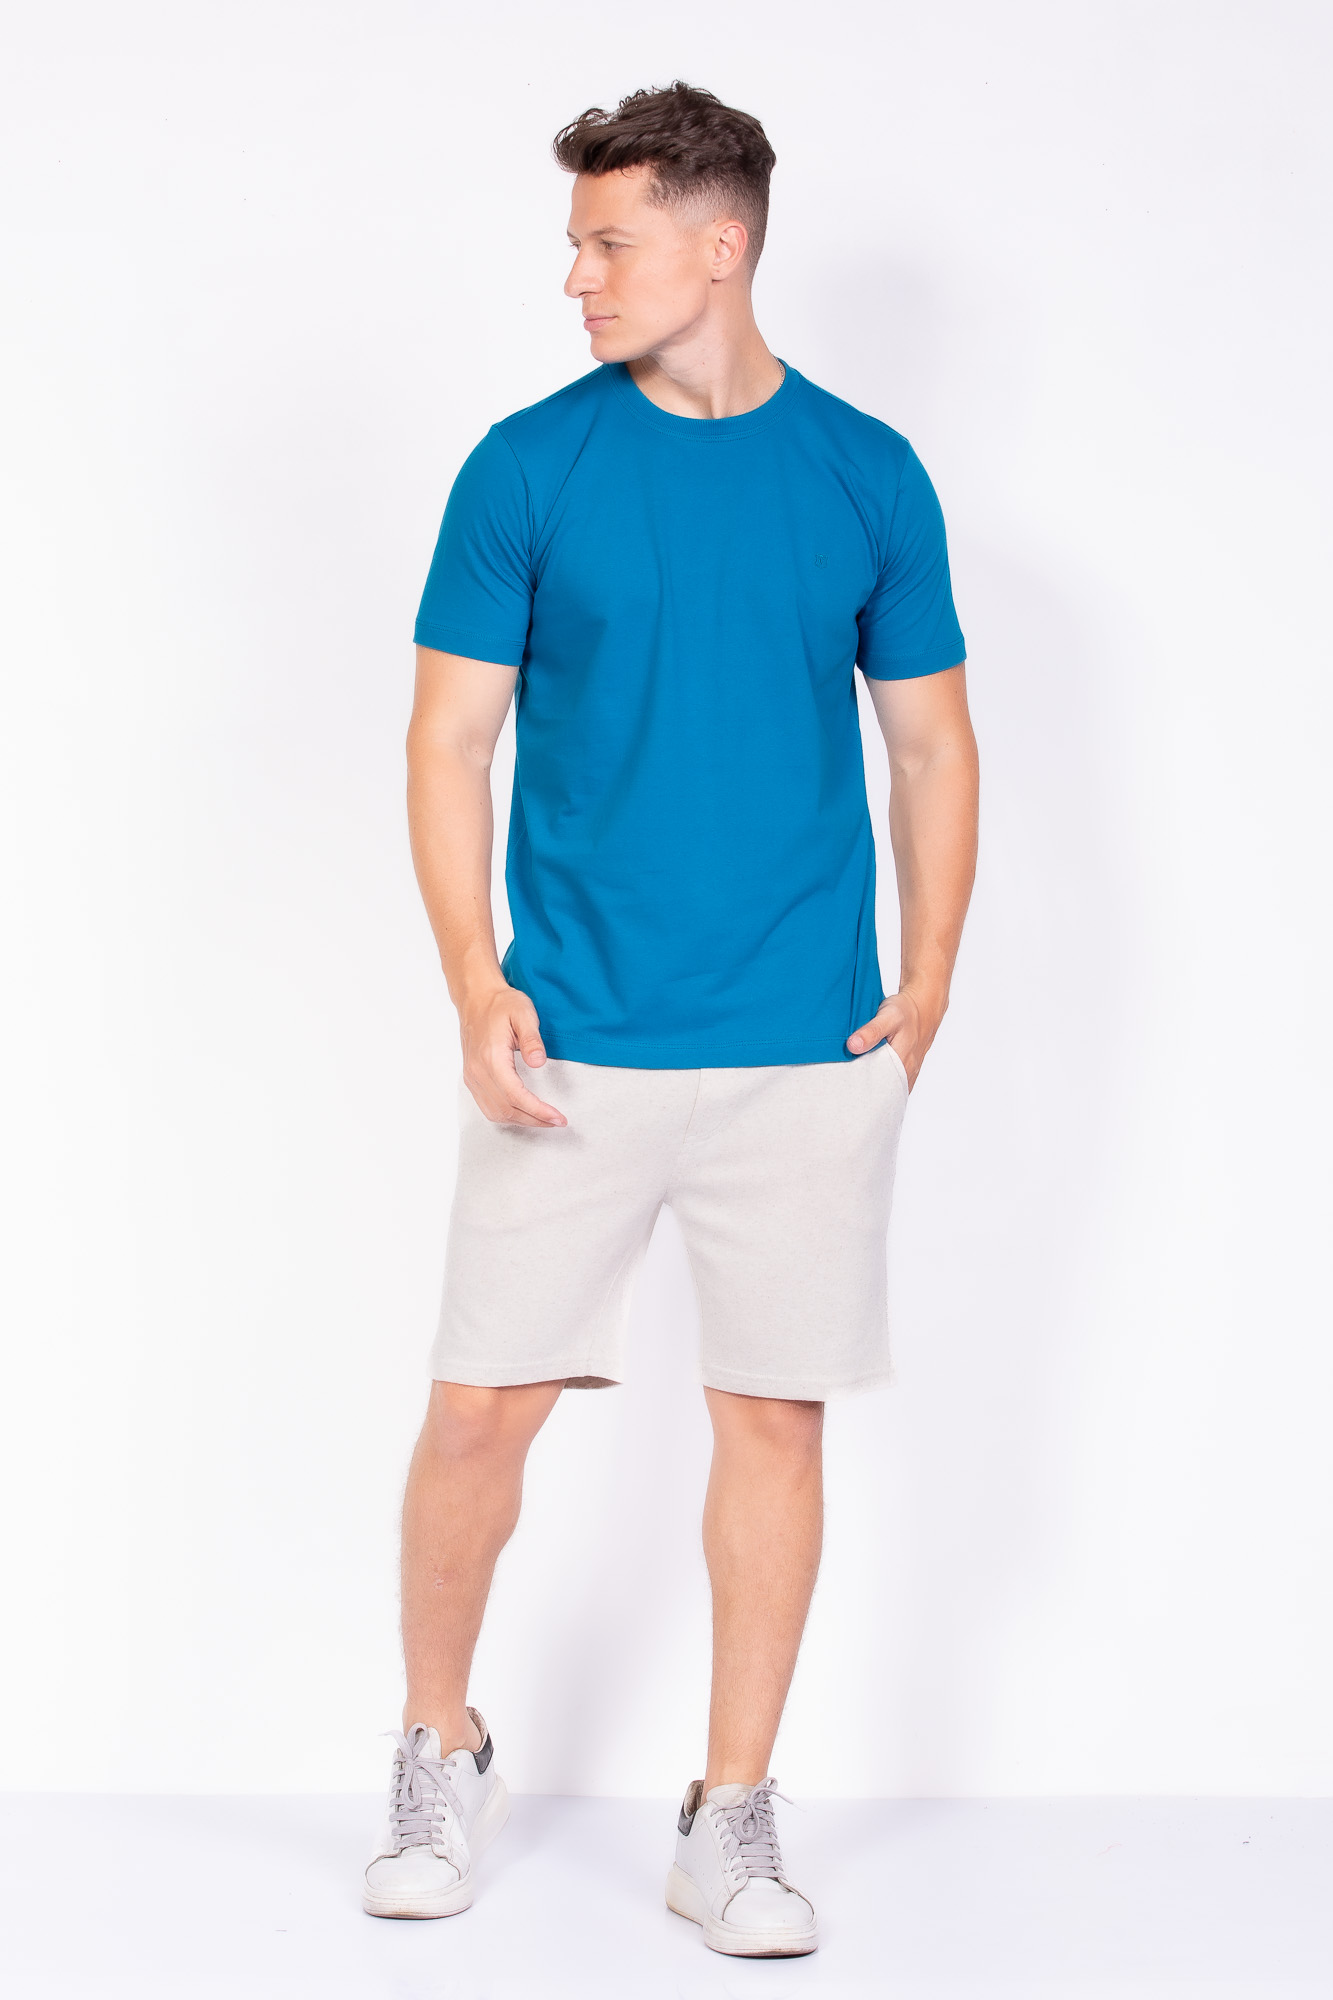 Camiseta Básica 100% algodão azul esmeralda